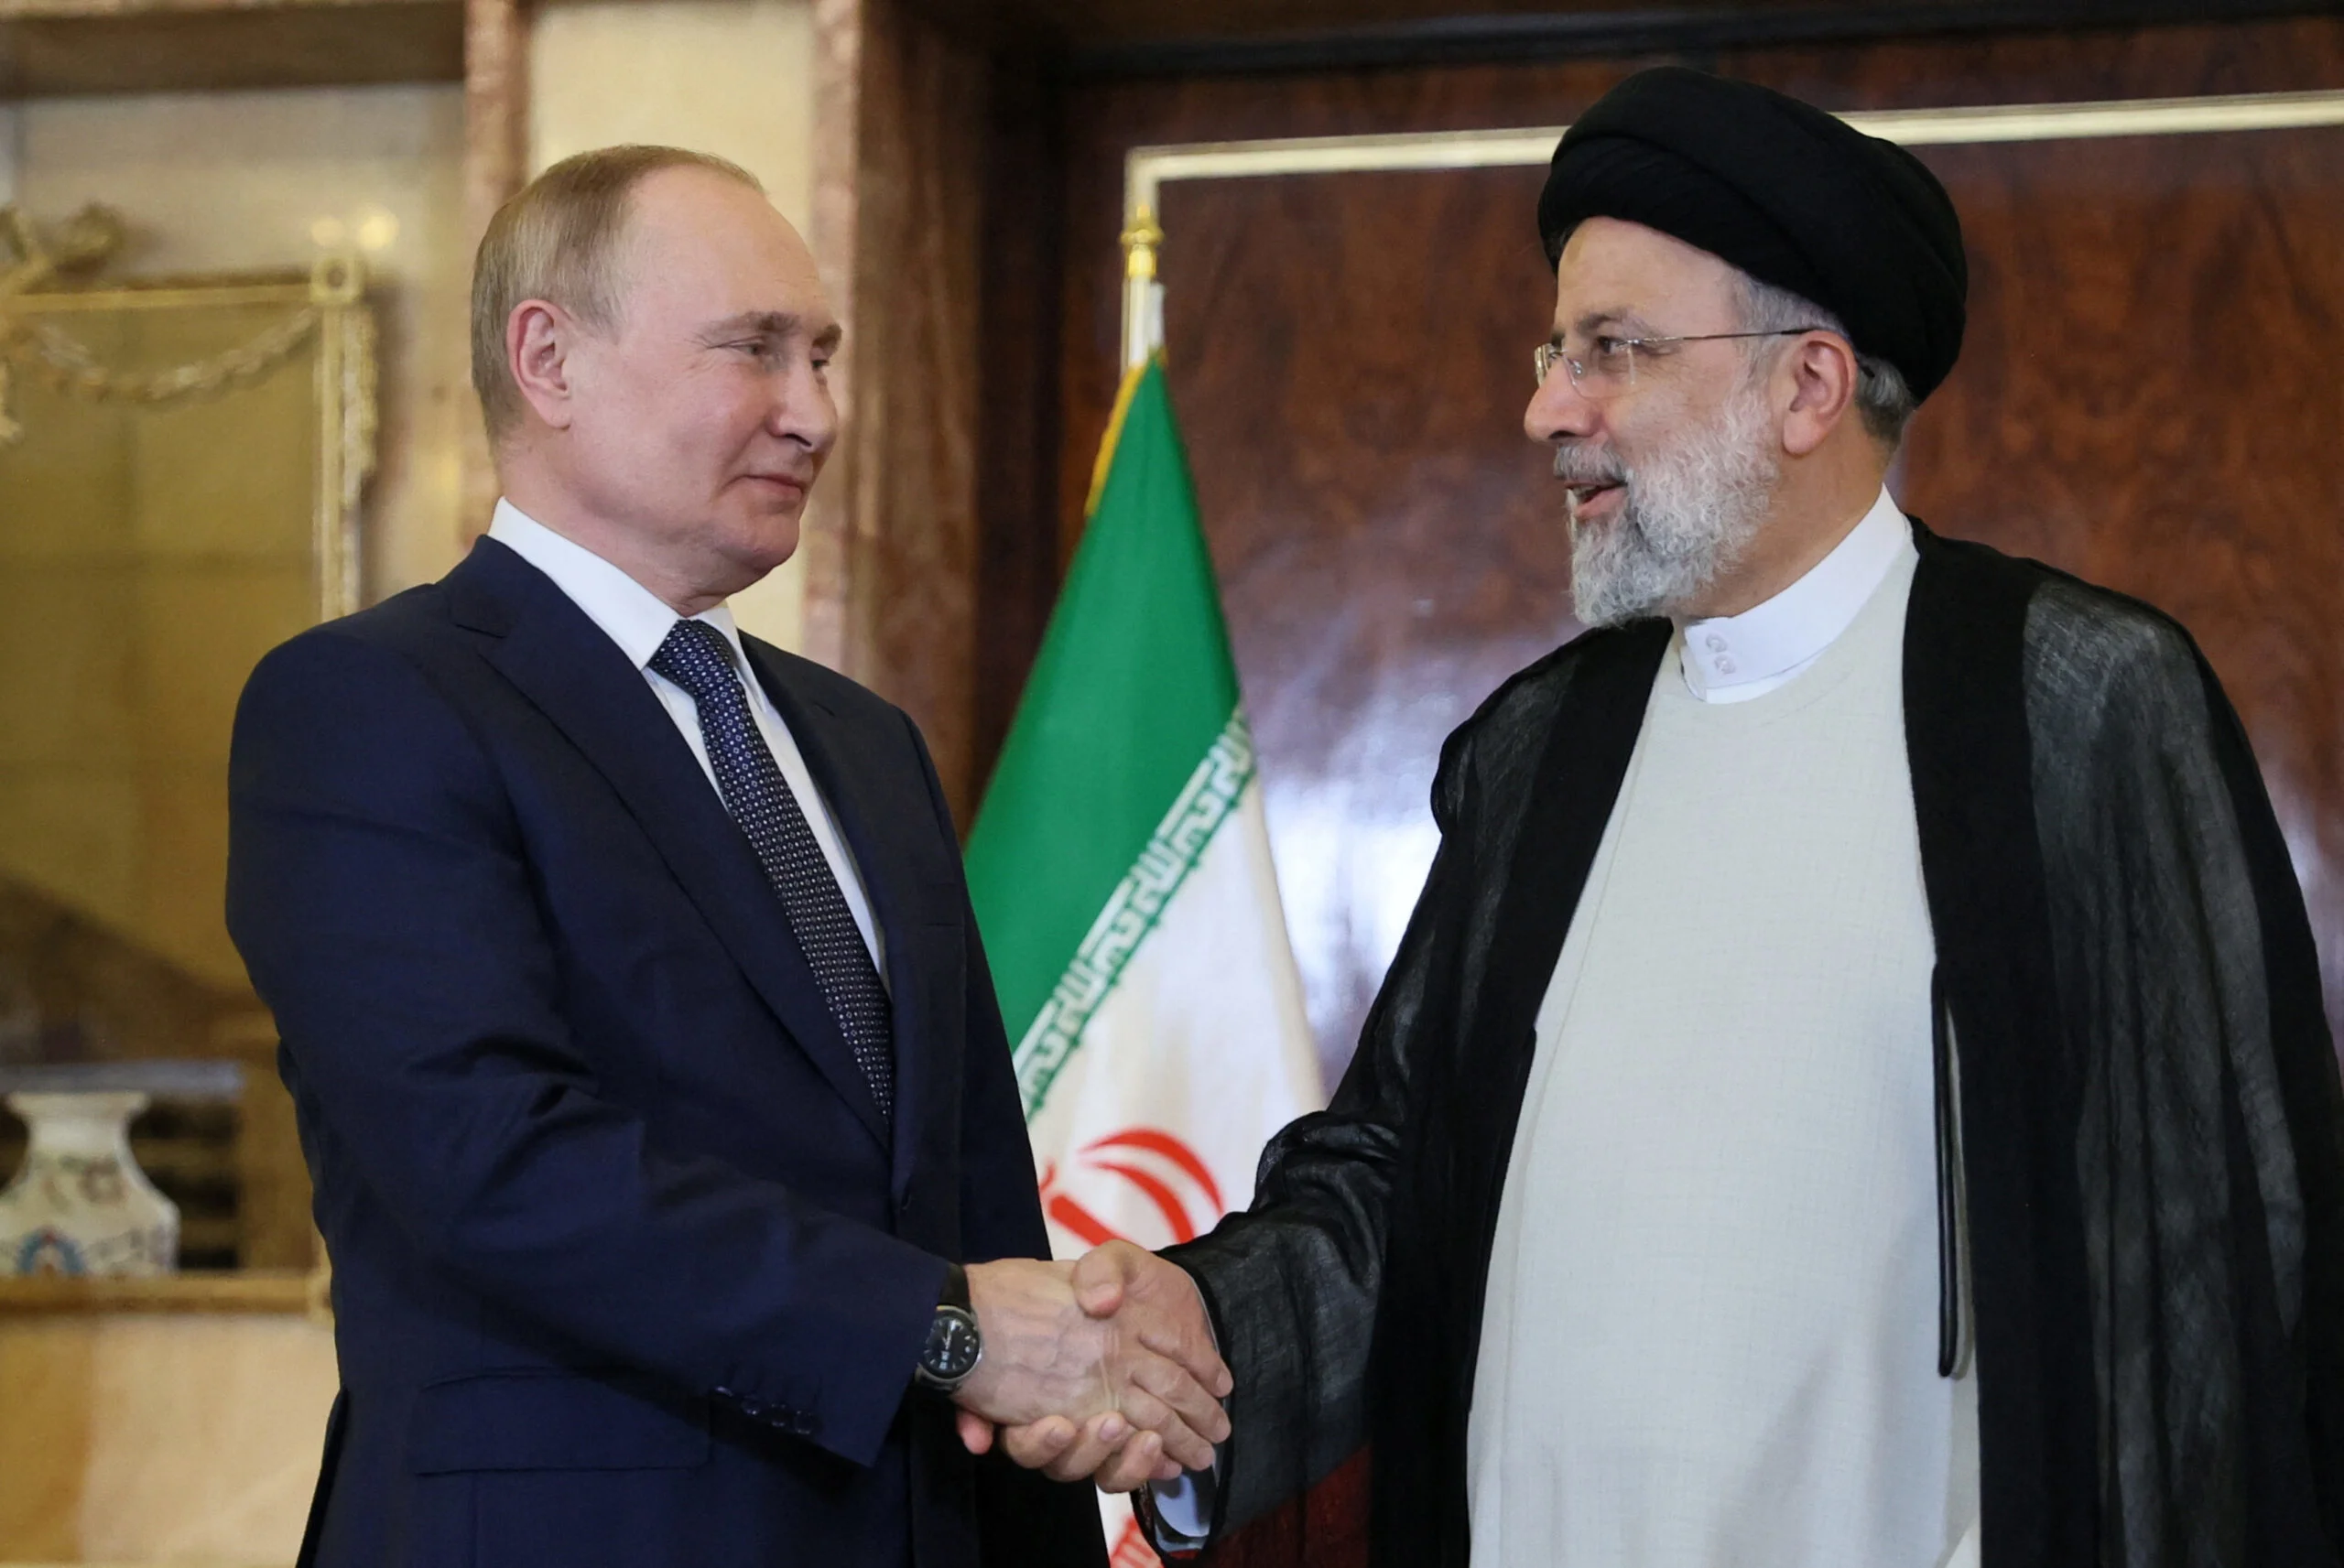 נשיא איראן איברהים ראיסי לצד נשיא רוסיה ולדימיר פוטין